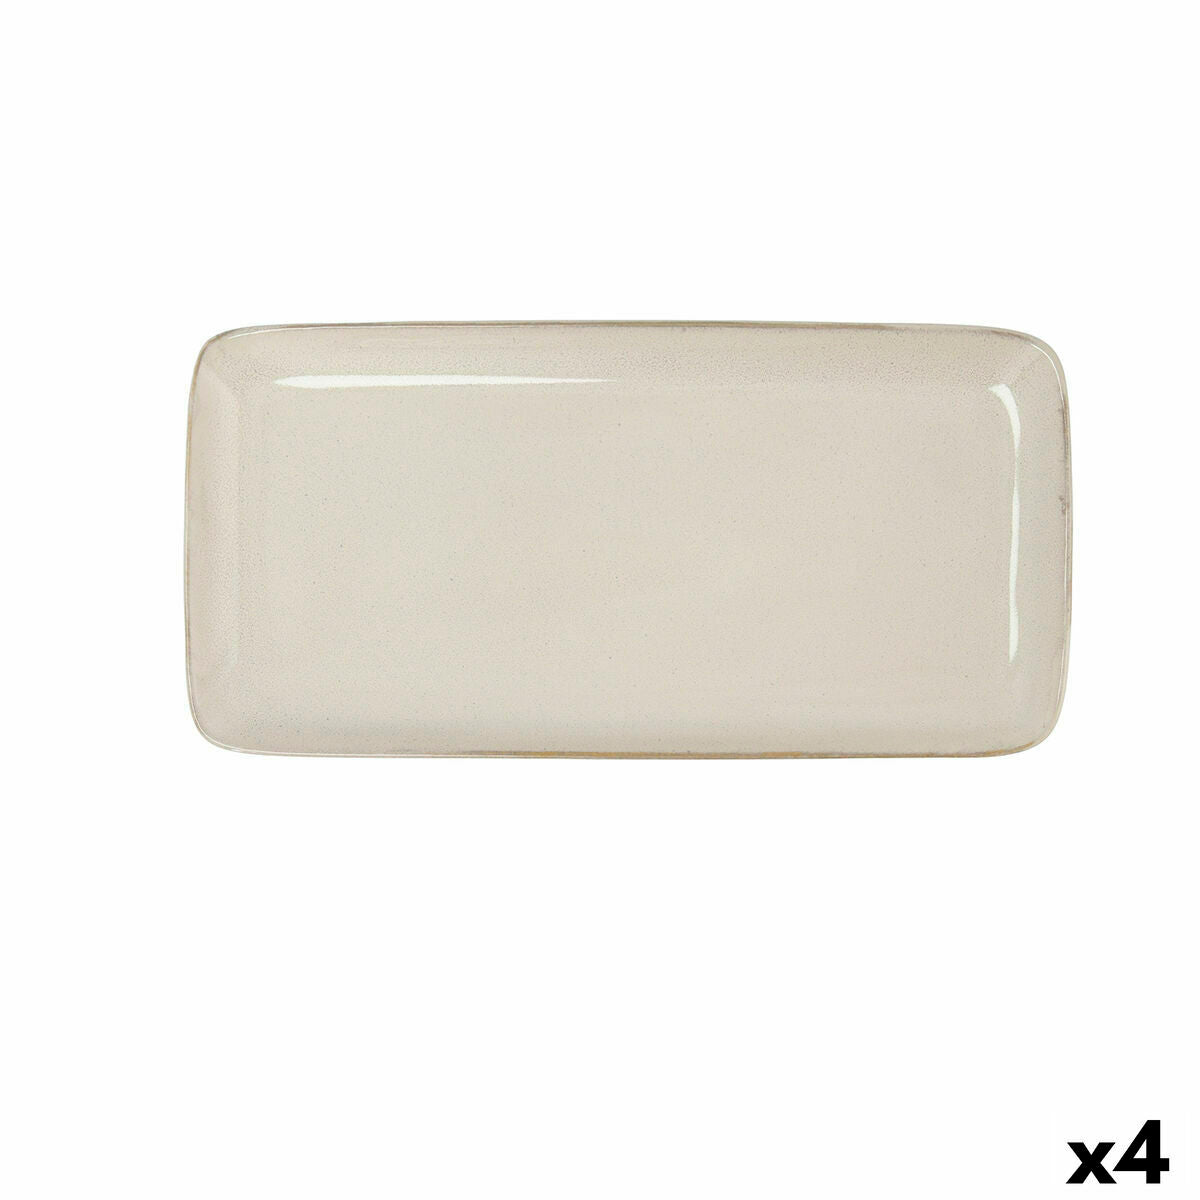 Keramik Kochschüssel Set "Weißer Glanz" - Praktisch und stilvoll!-Bidasoa-8414793695367-Ciniskitchen